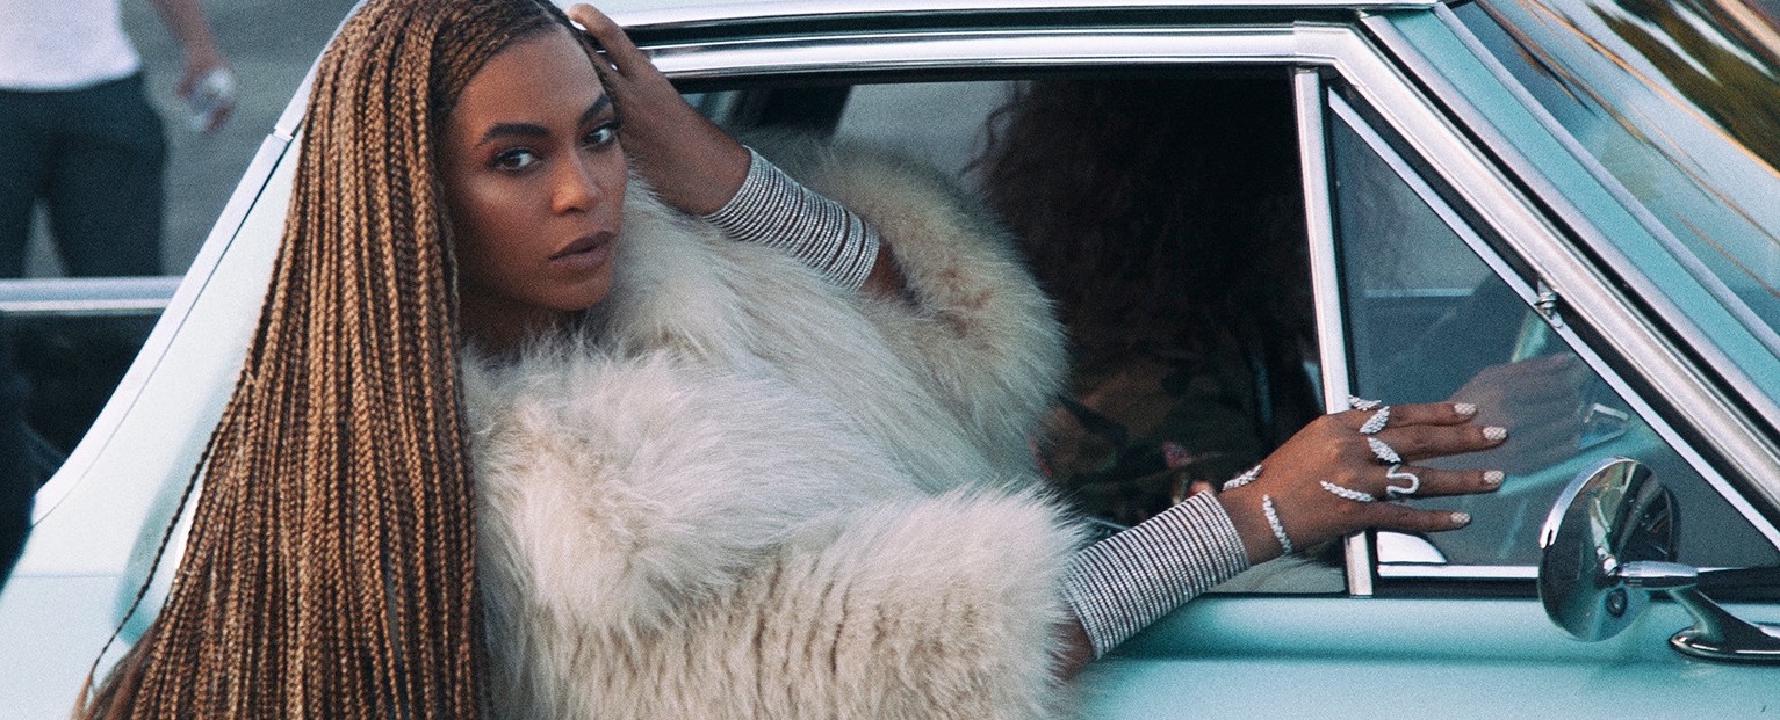 Promofoto von Beyoncé.